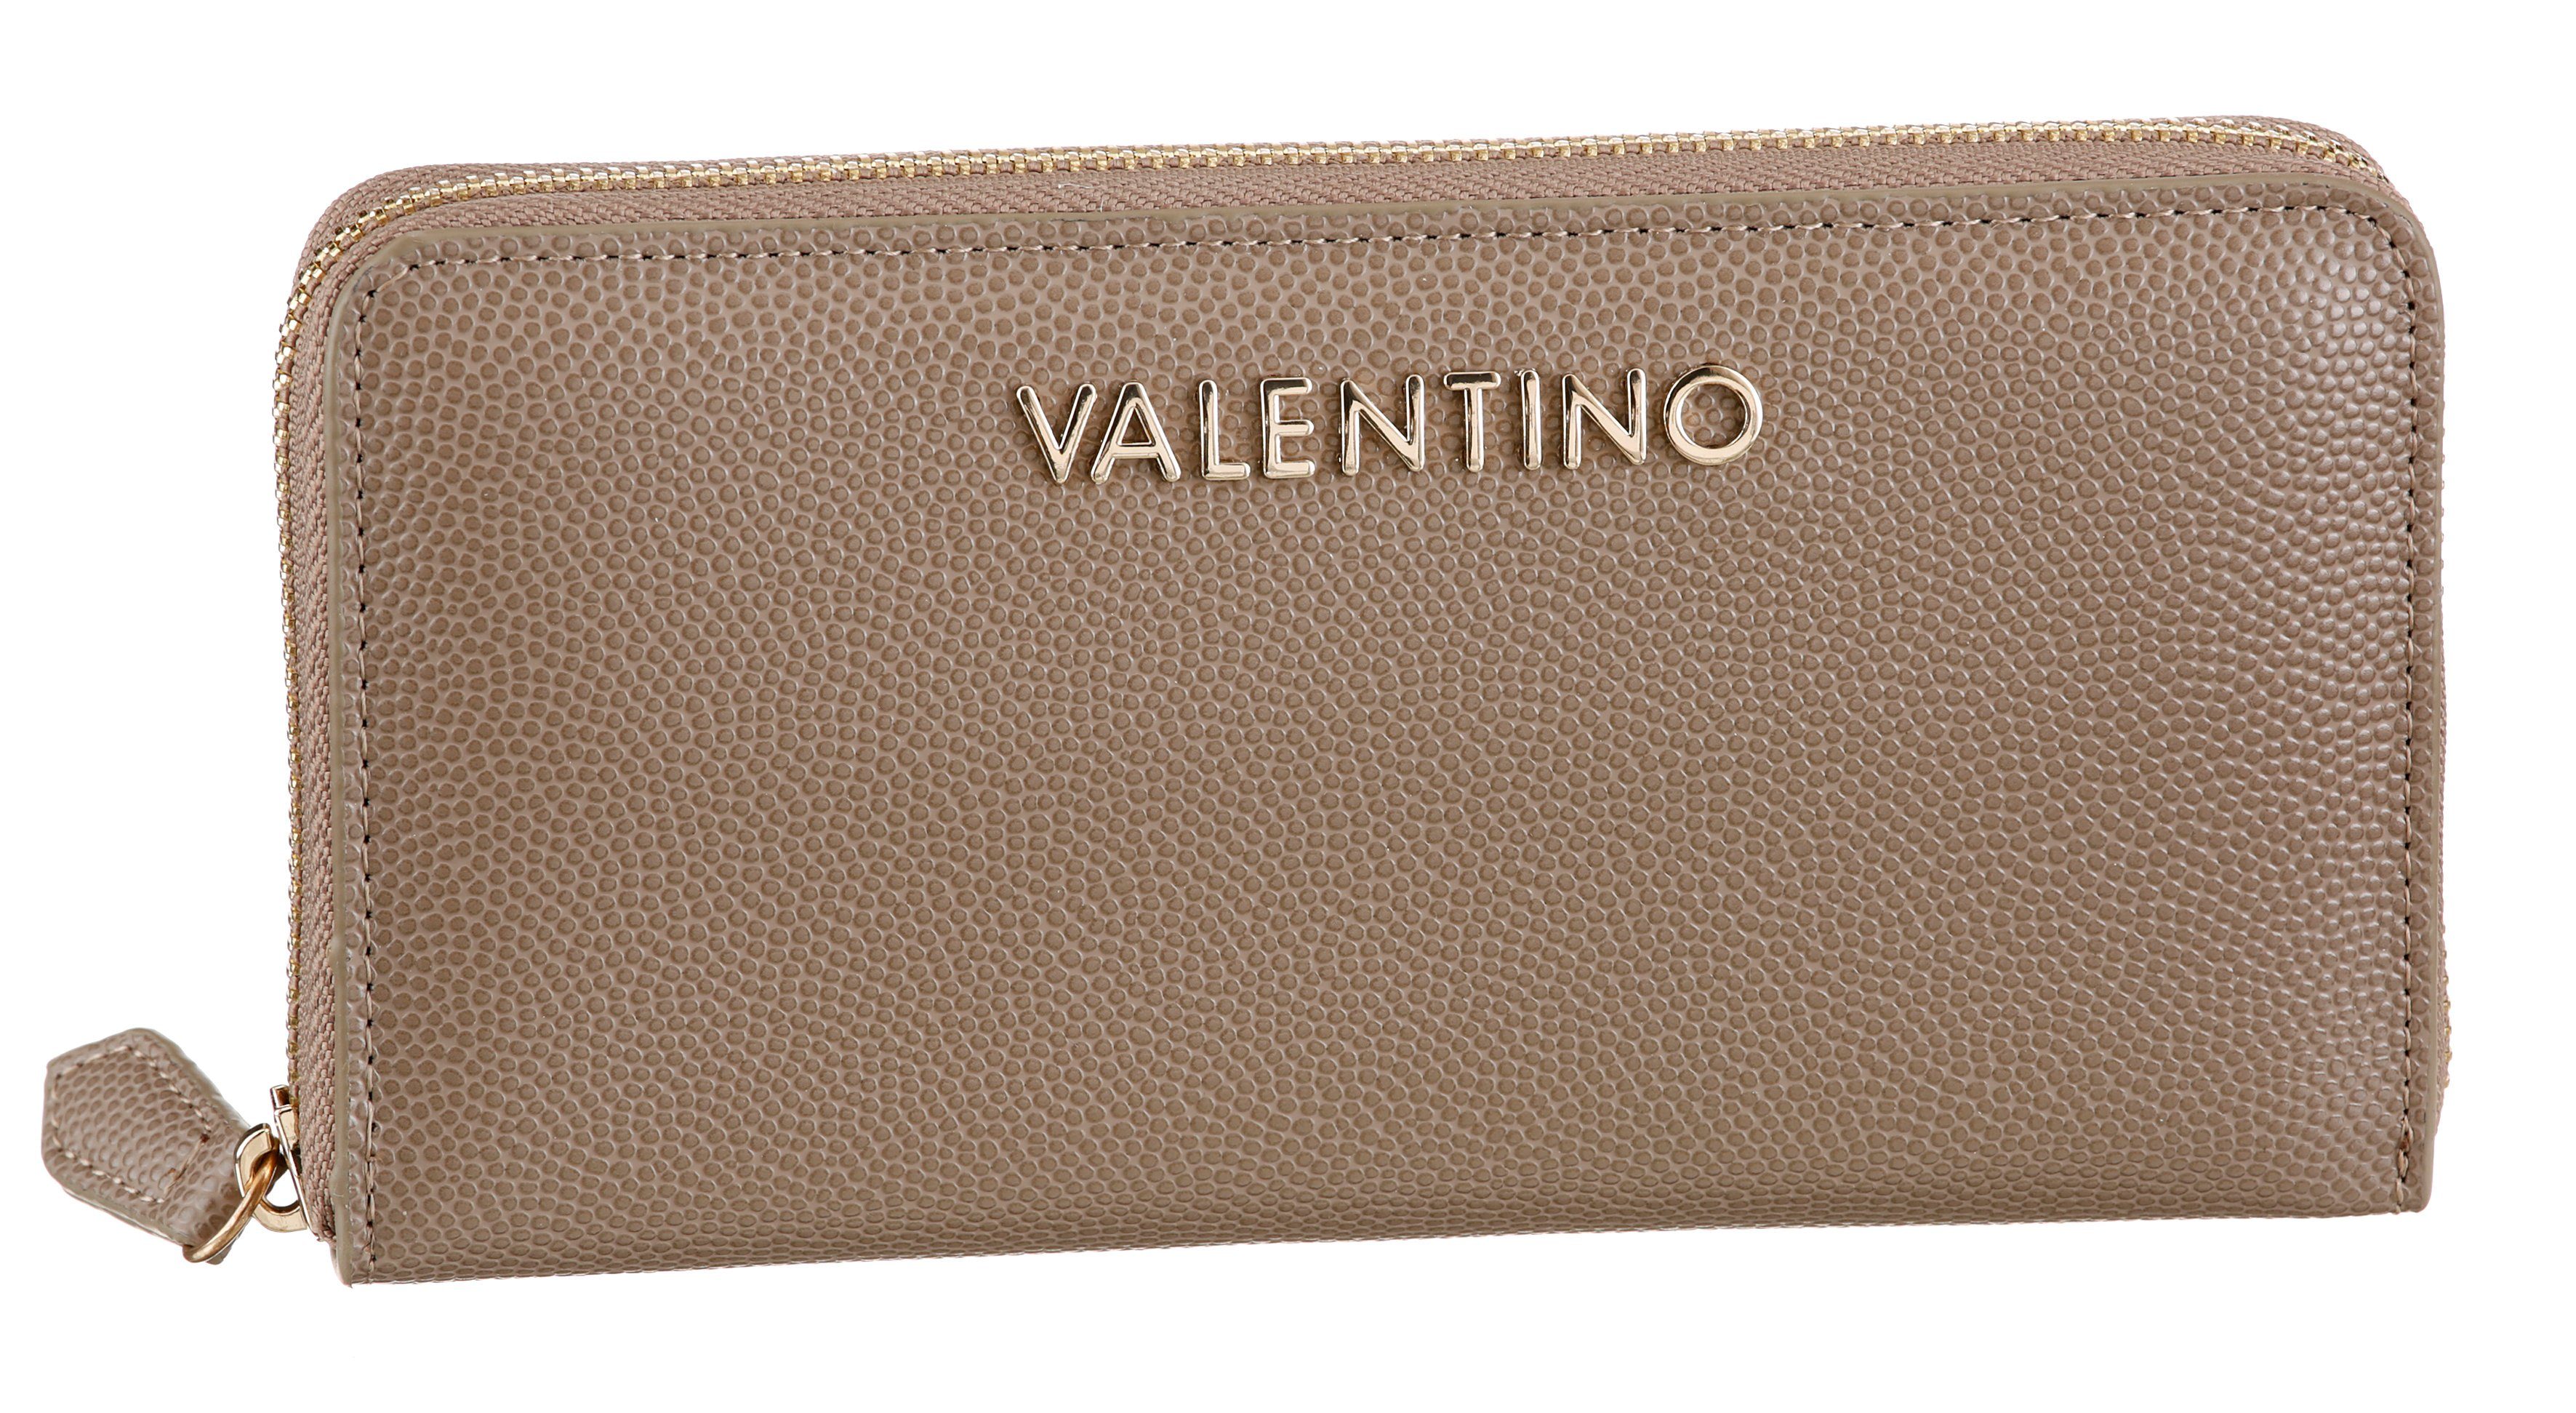 VALENTINO BAGS Geldbörse DIVINA, mit leicht genarbter Oberfläche und silberfarnene Details taupe